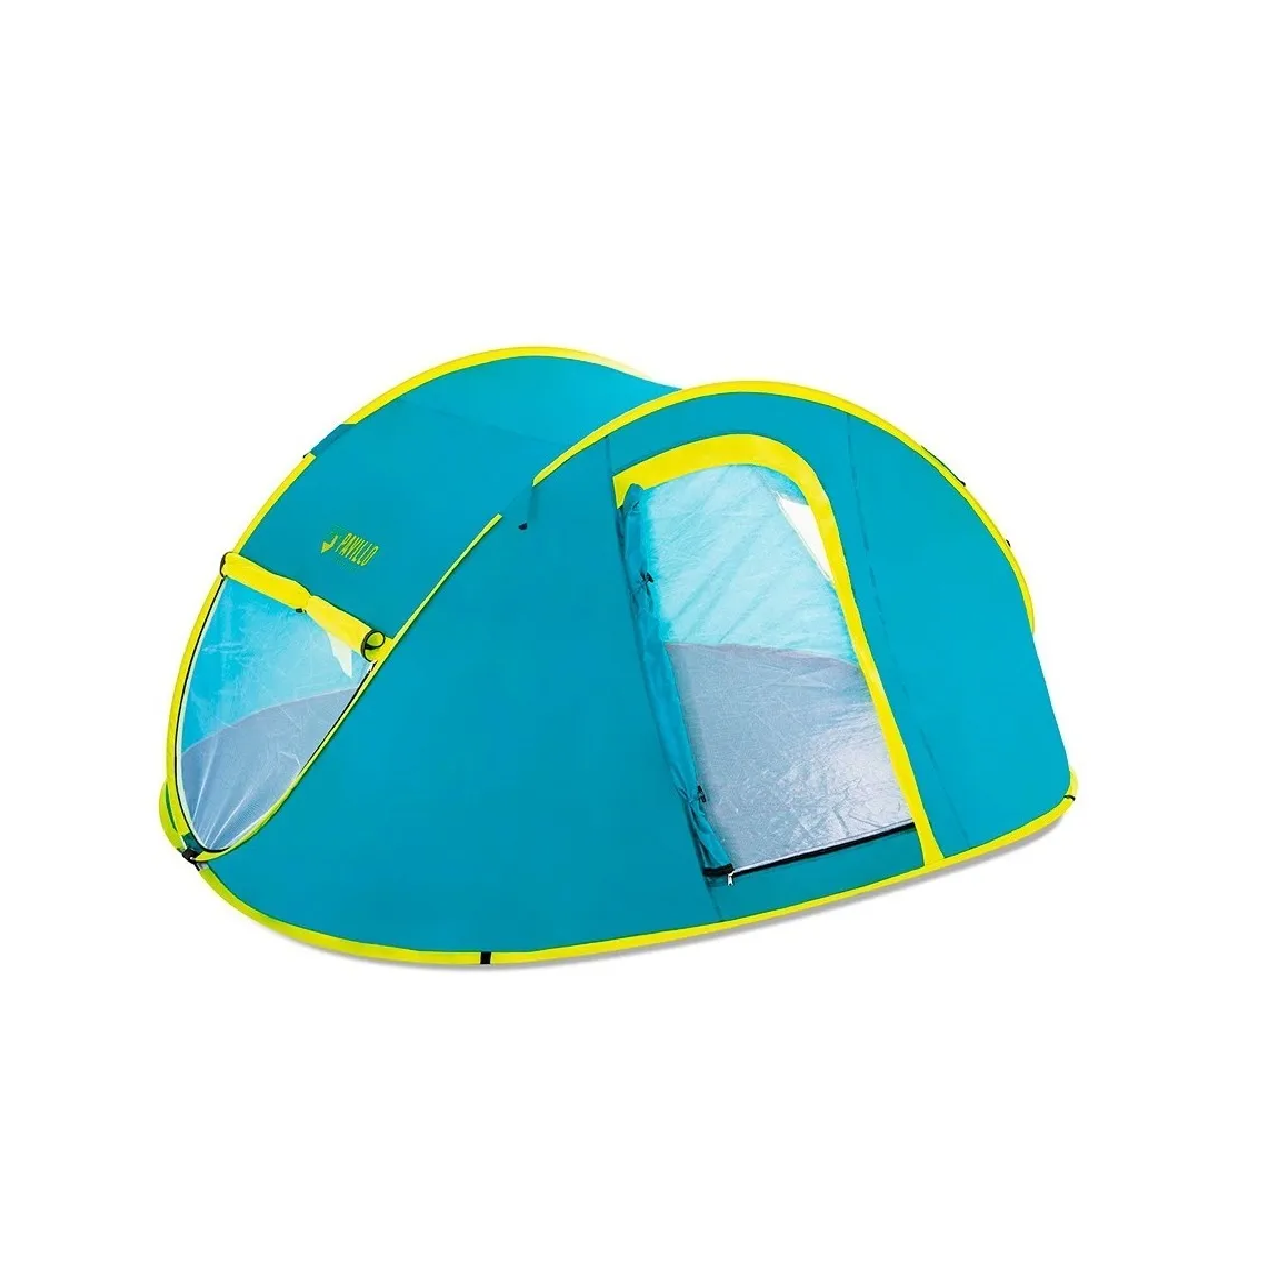 Colchoneta inflable para camping Intex elaborada en plástico y